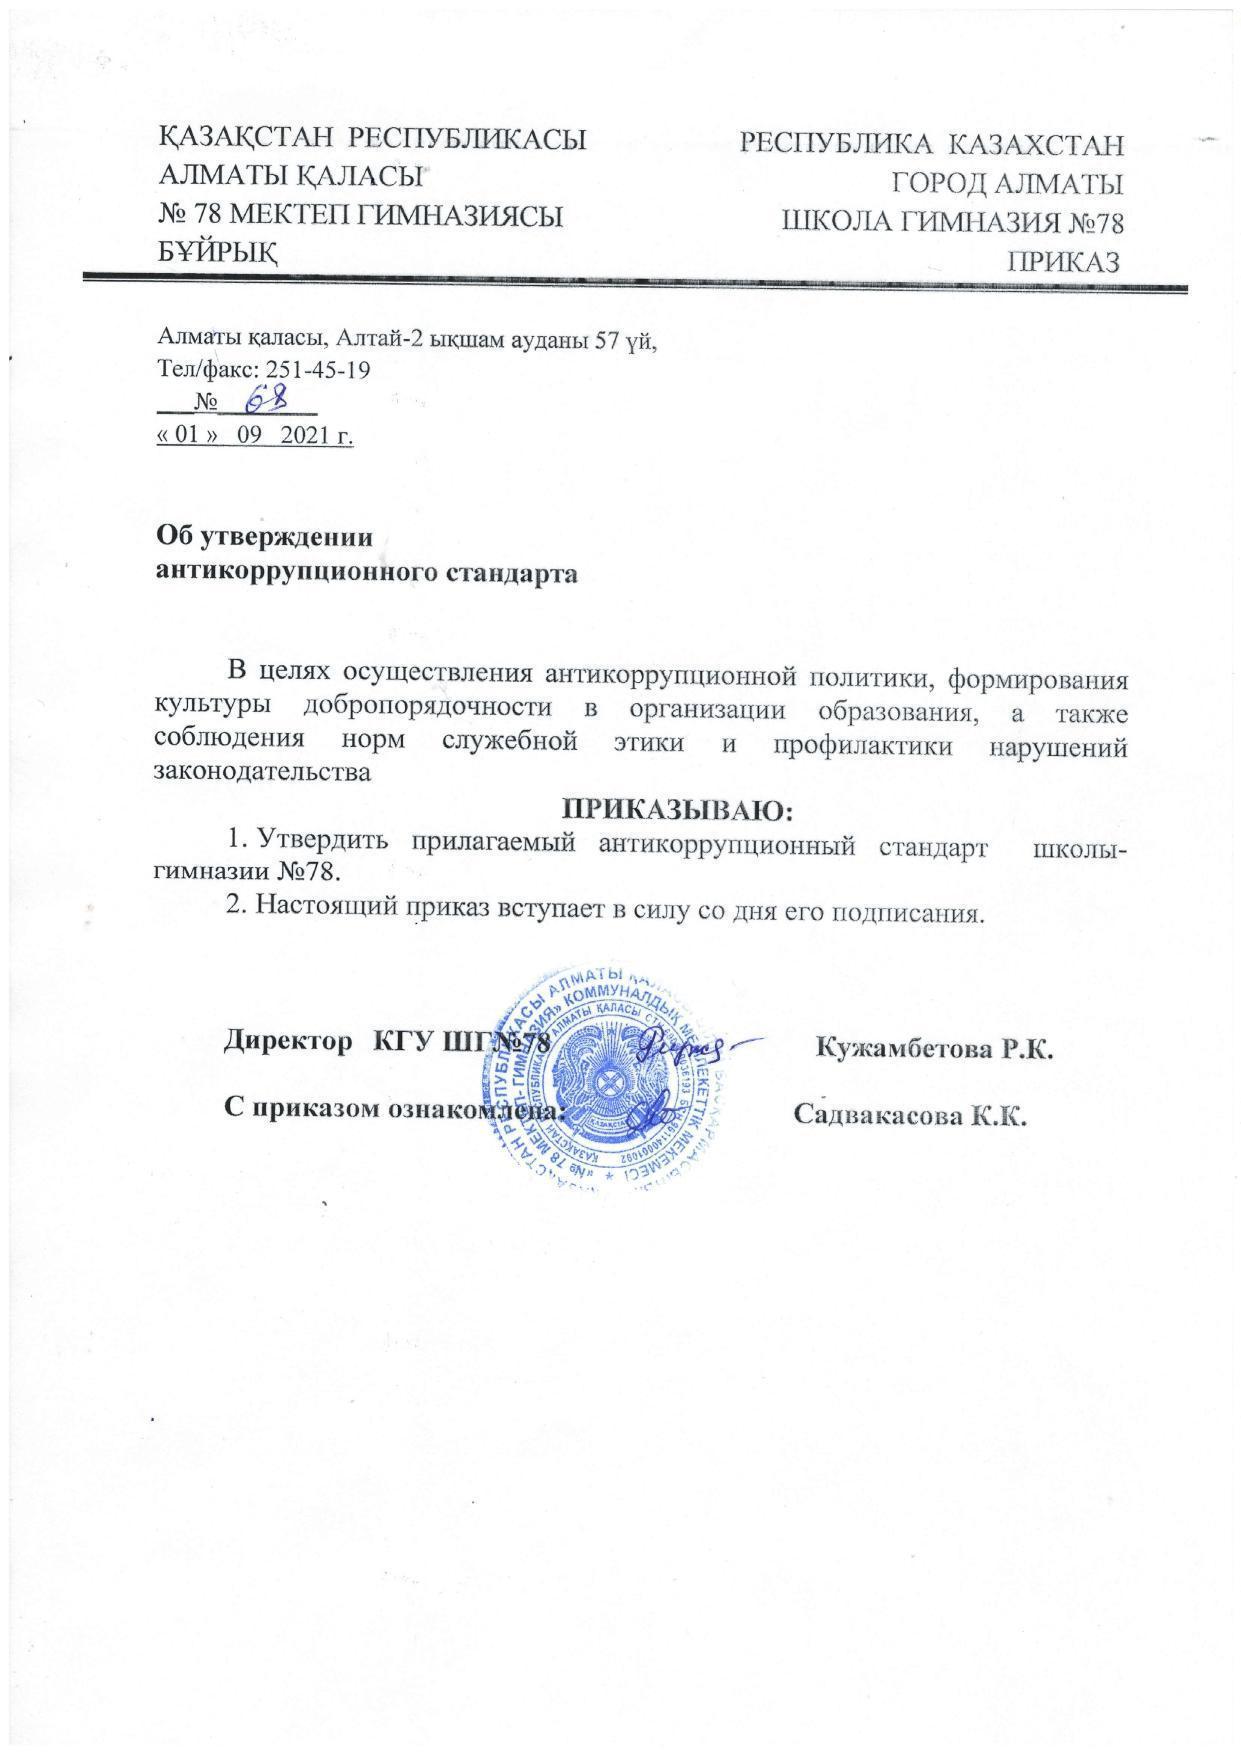 Приказ об утверждении антикоррупционного стандарта от 01.09.2021г.